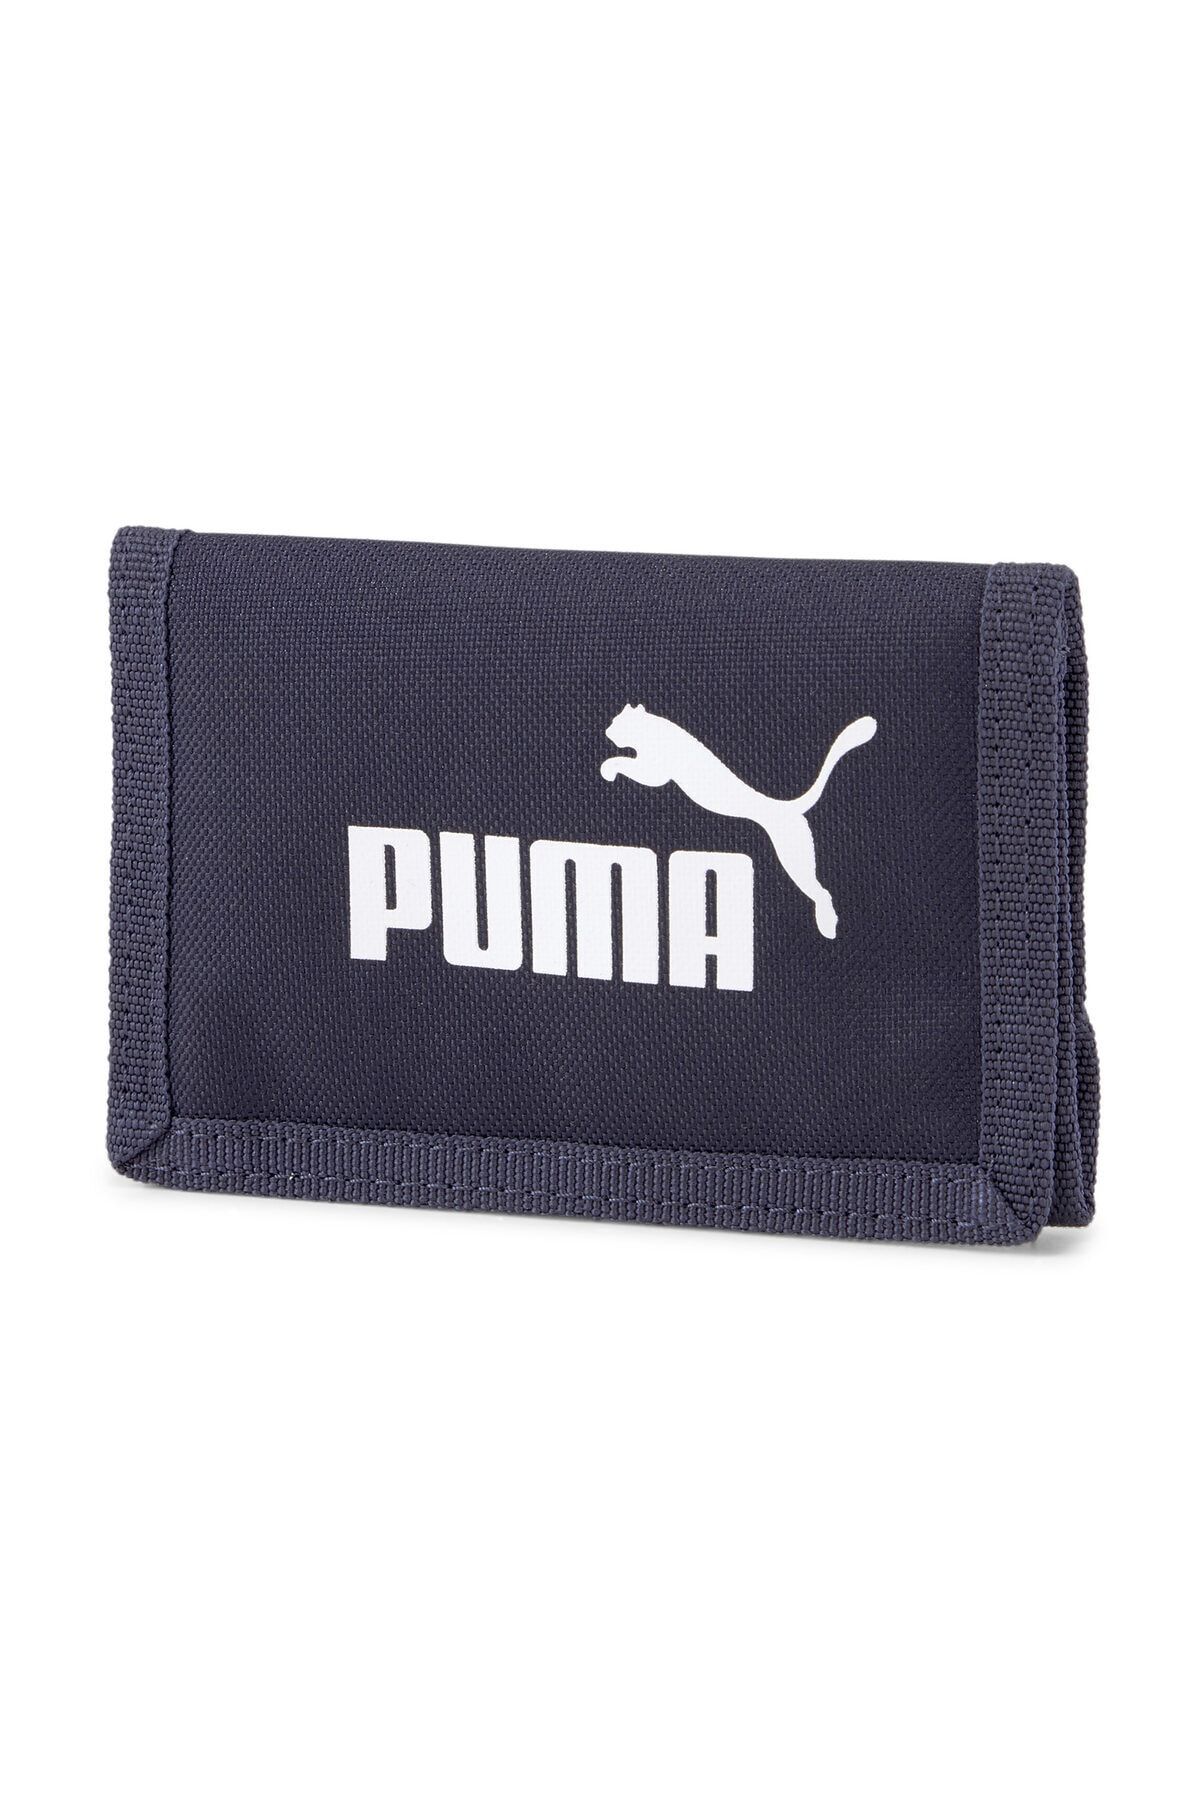 Puma Phase Wallet - Lacivert Unisex Cüzdan